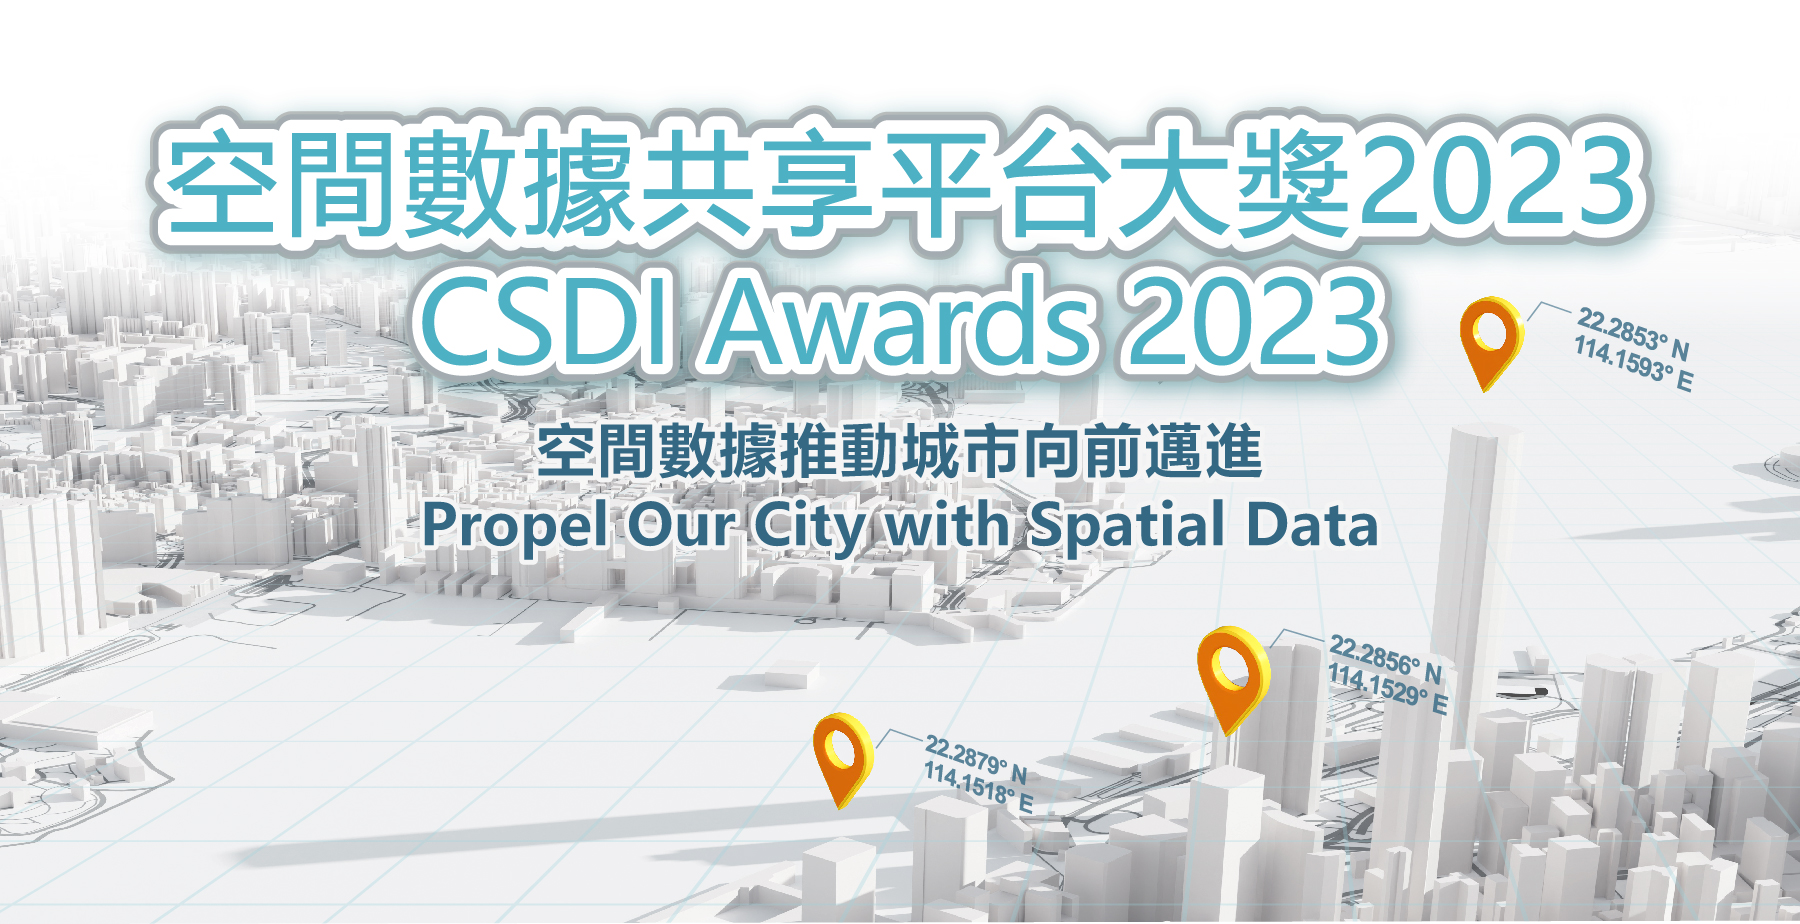 Poster of CSDI Awards 2023